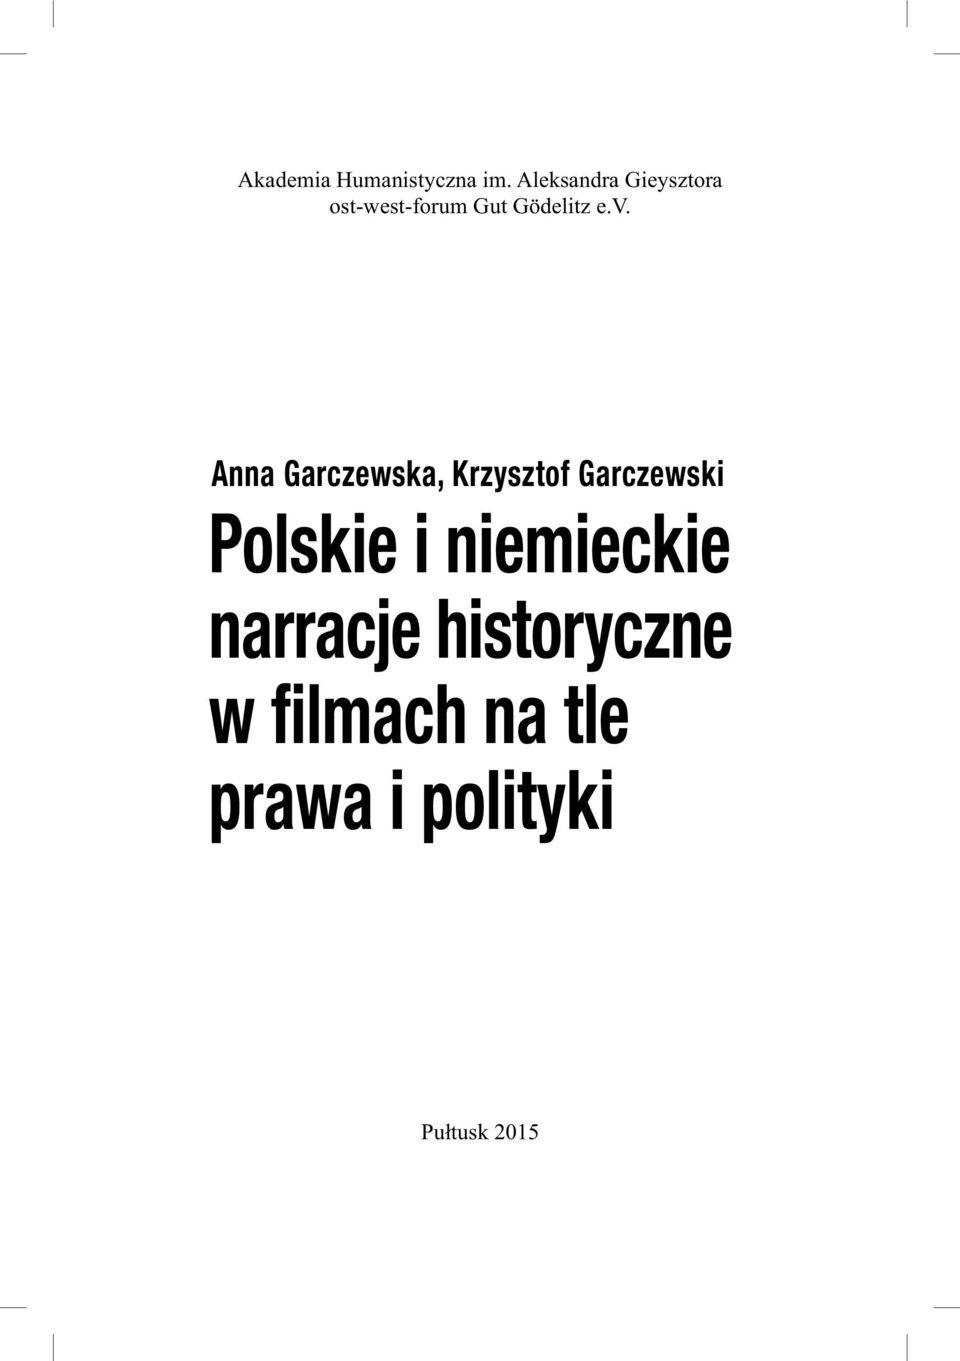 v. Anna Garczewska, Krzysztof Garczewski Polskie i